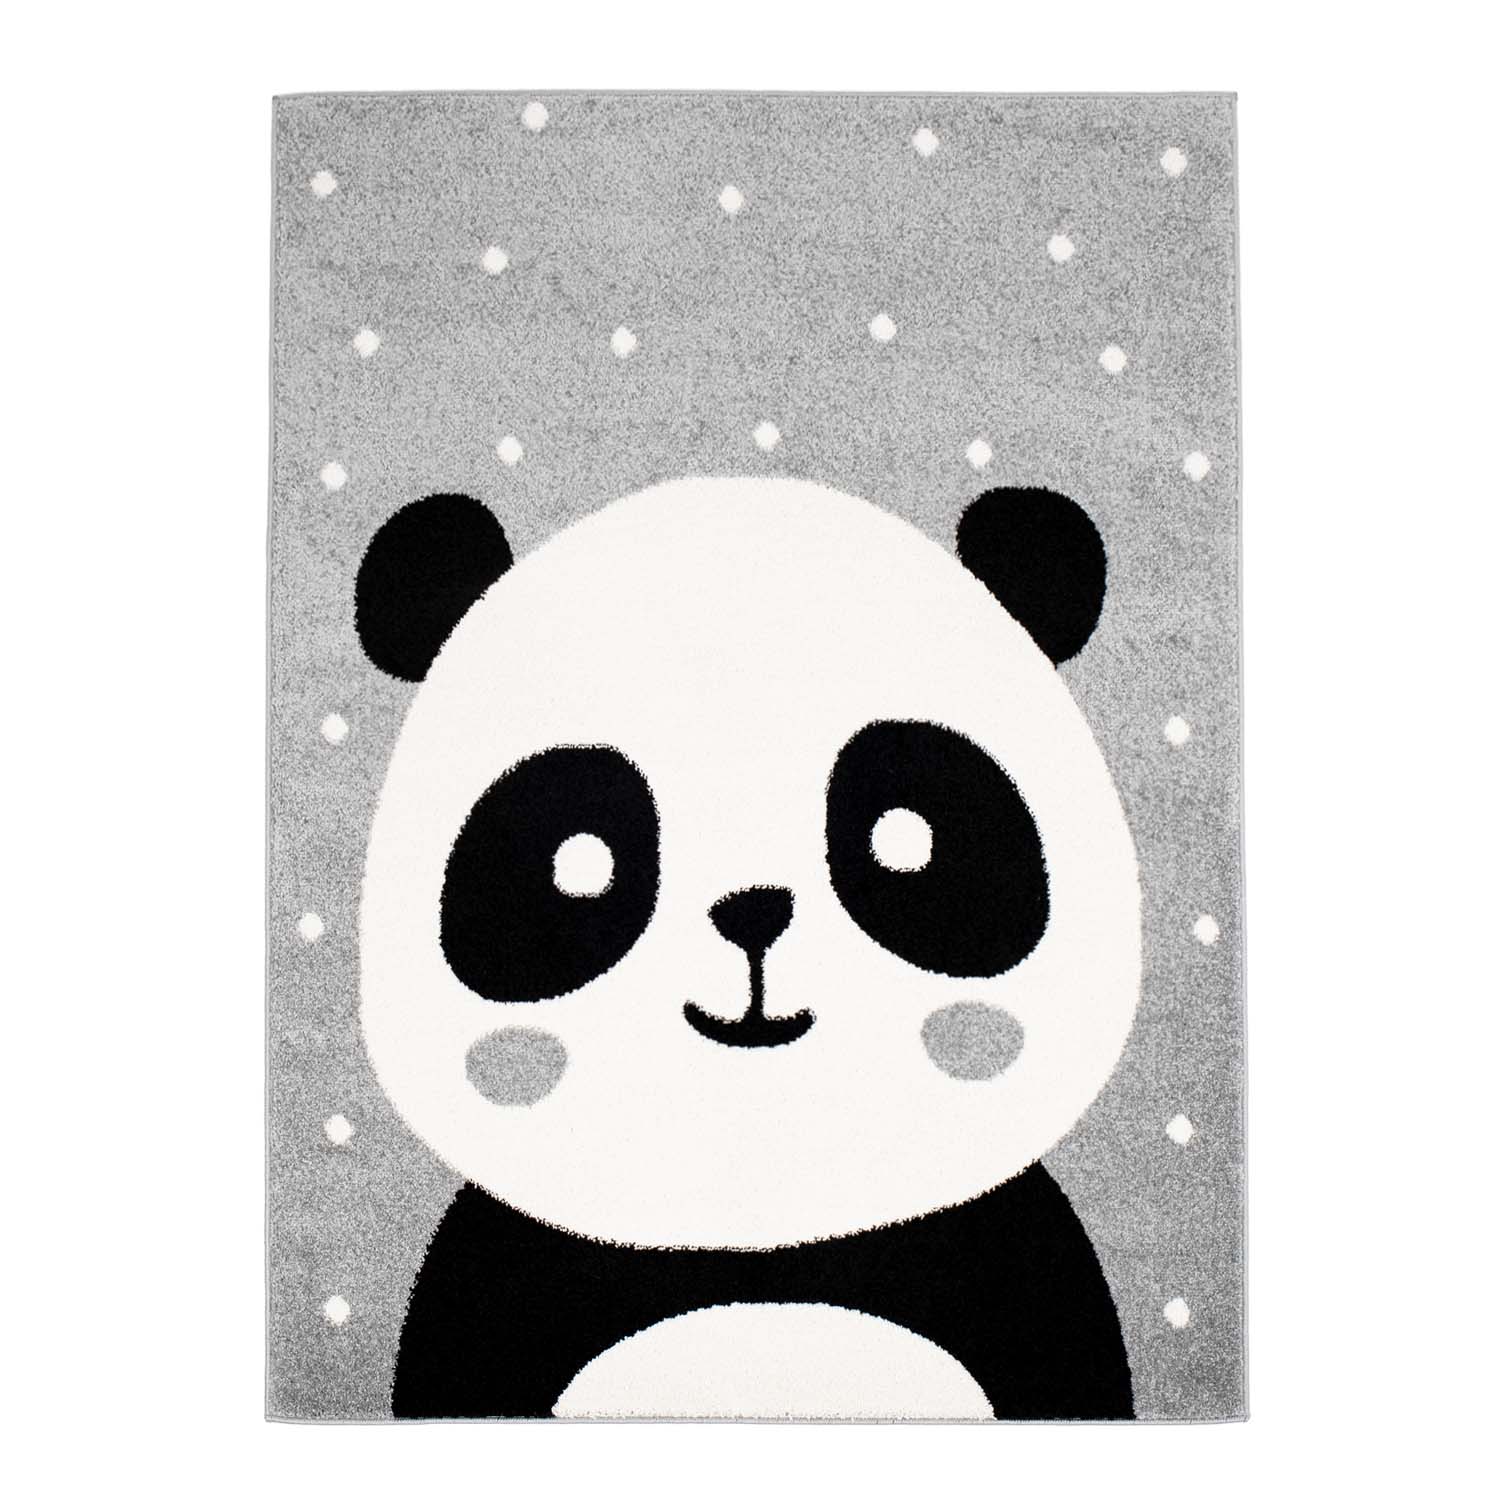 Teppiche für das Kinderzimmer
Kinderteppich
für junge Mädchen mit Tier Bubble Panda grau Panda